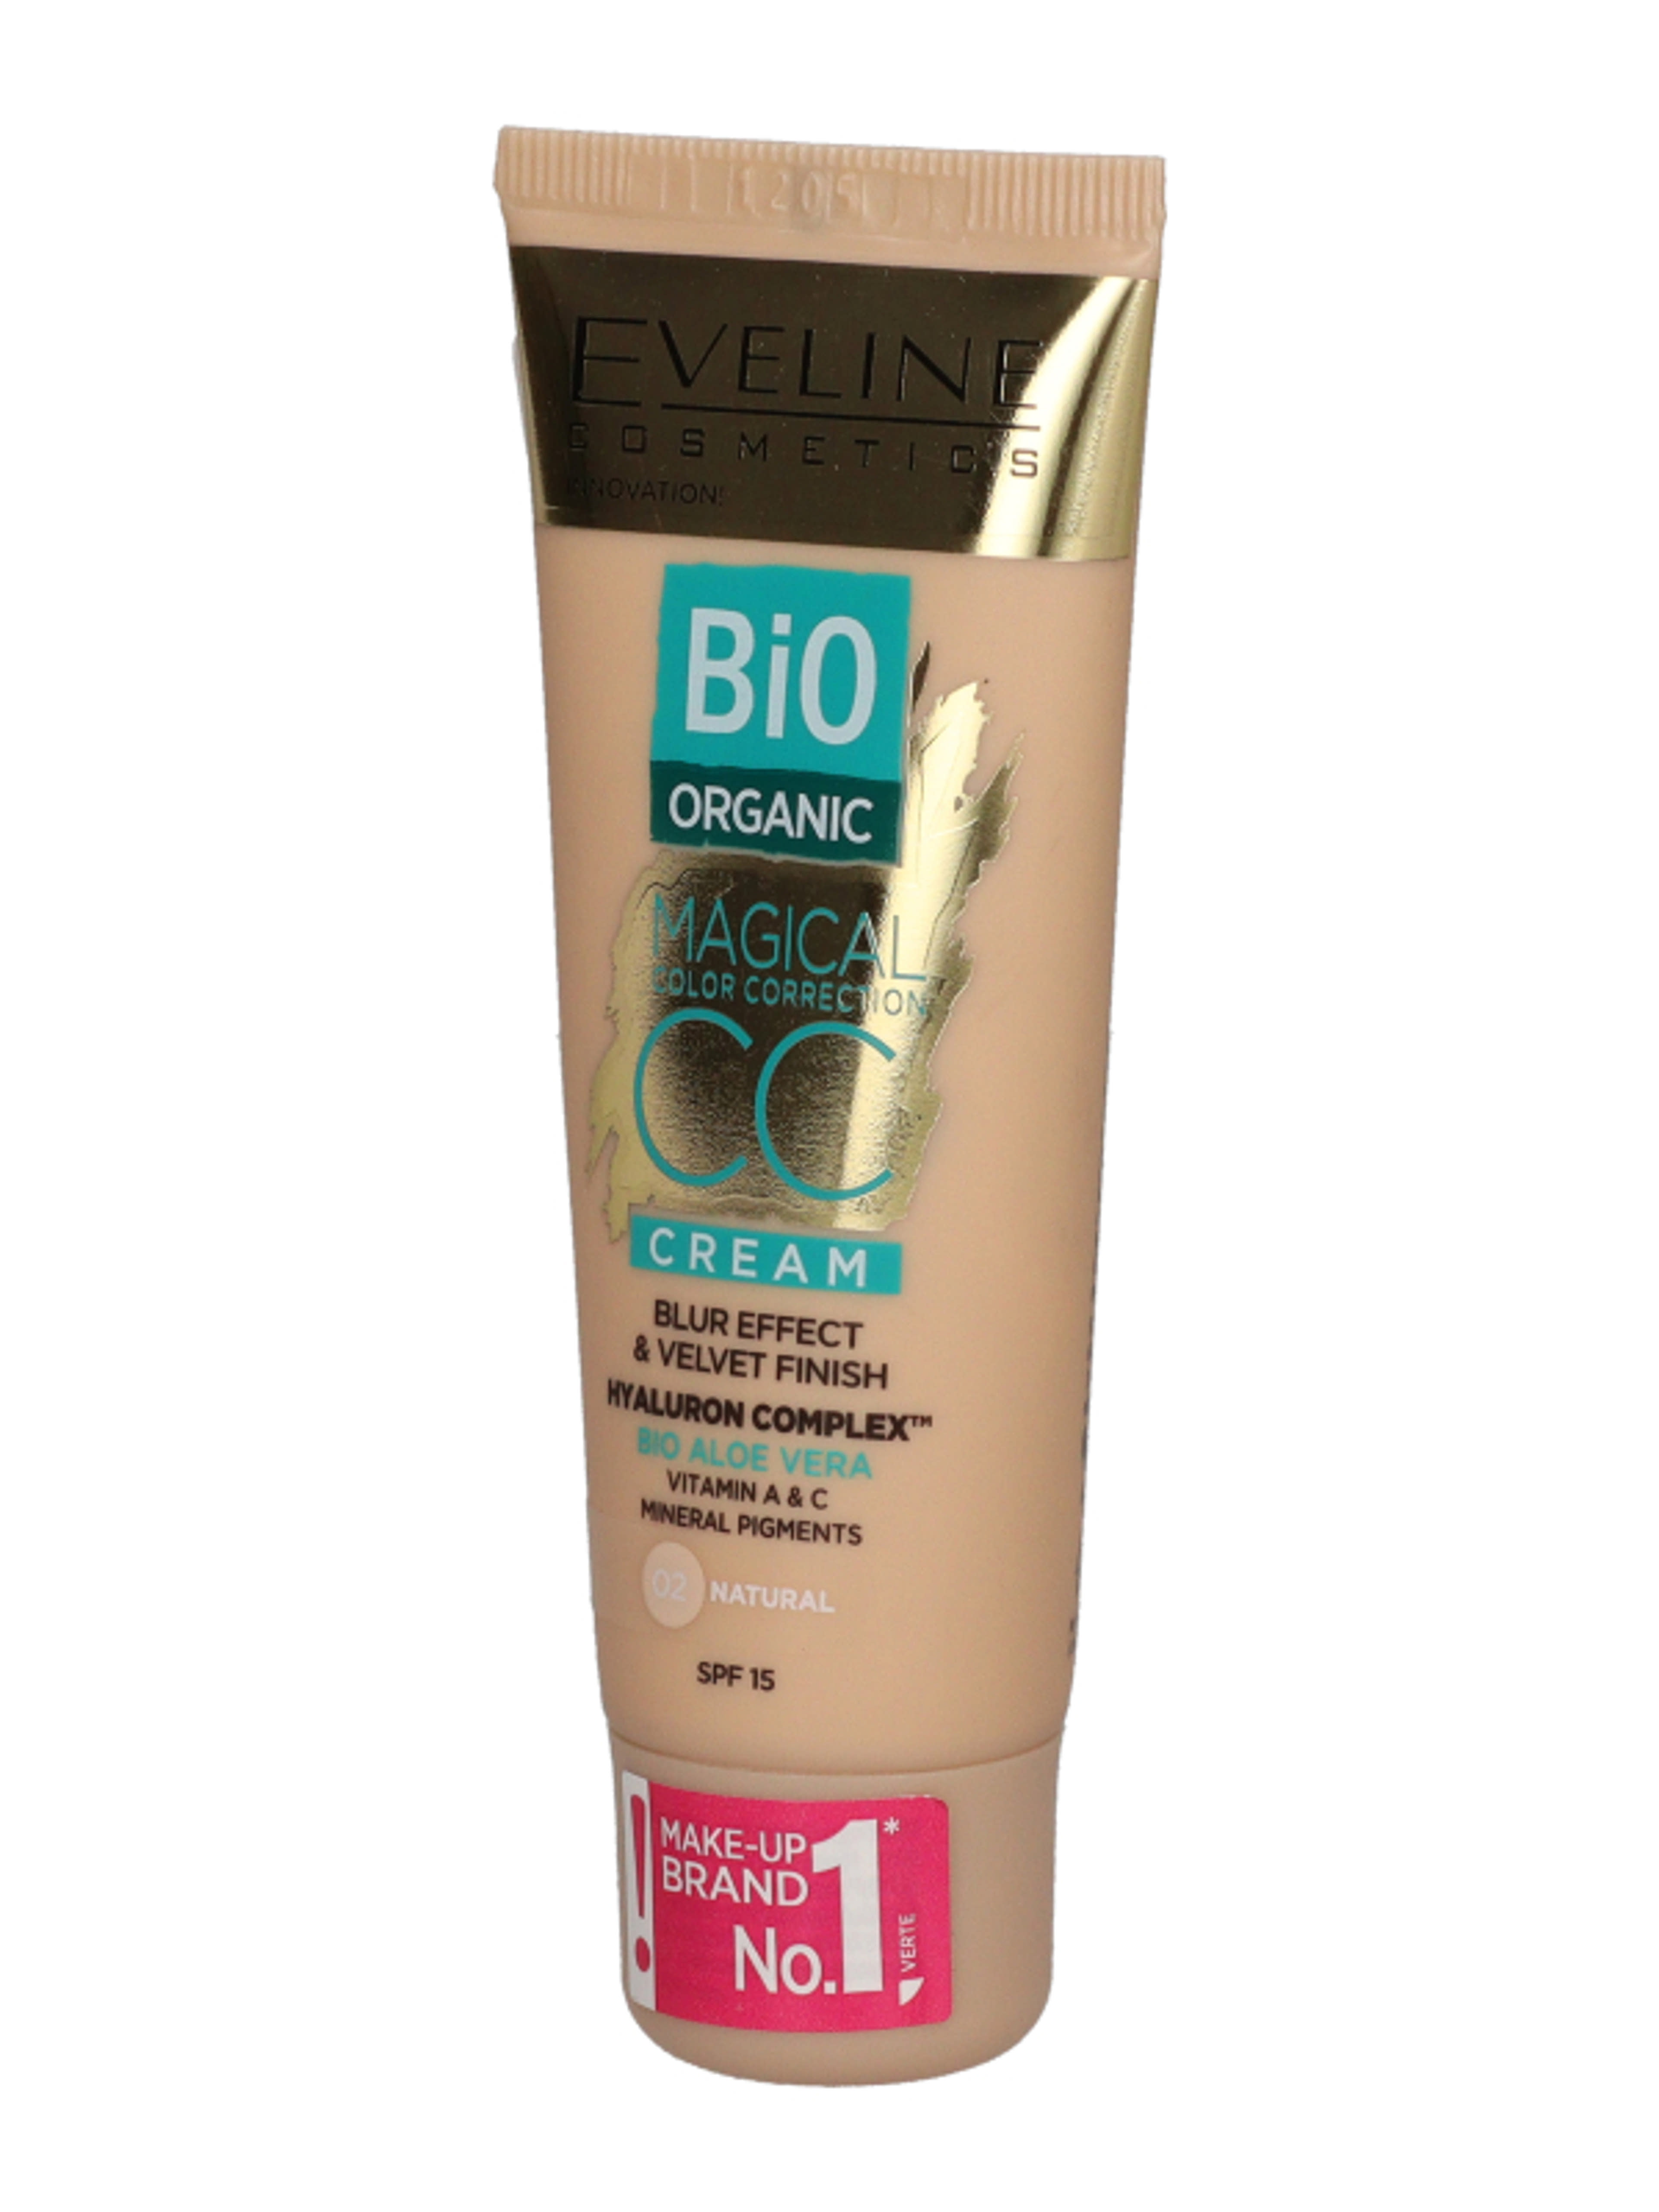 Eveline Bio Organic CC krém /02 - 1 db-3